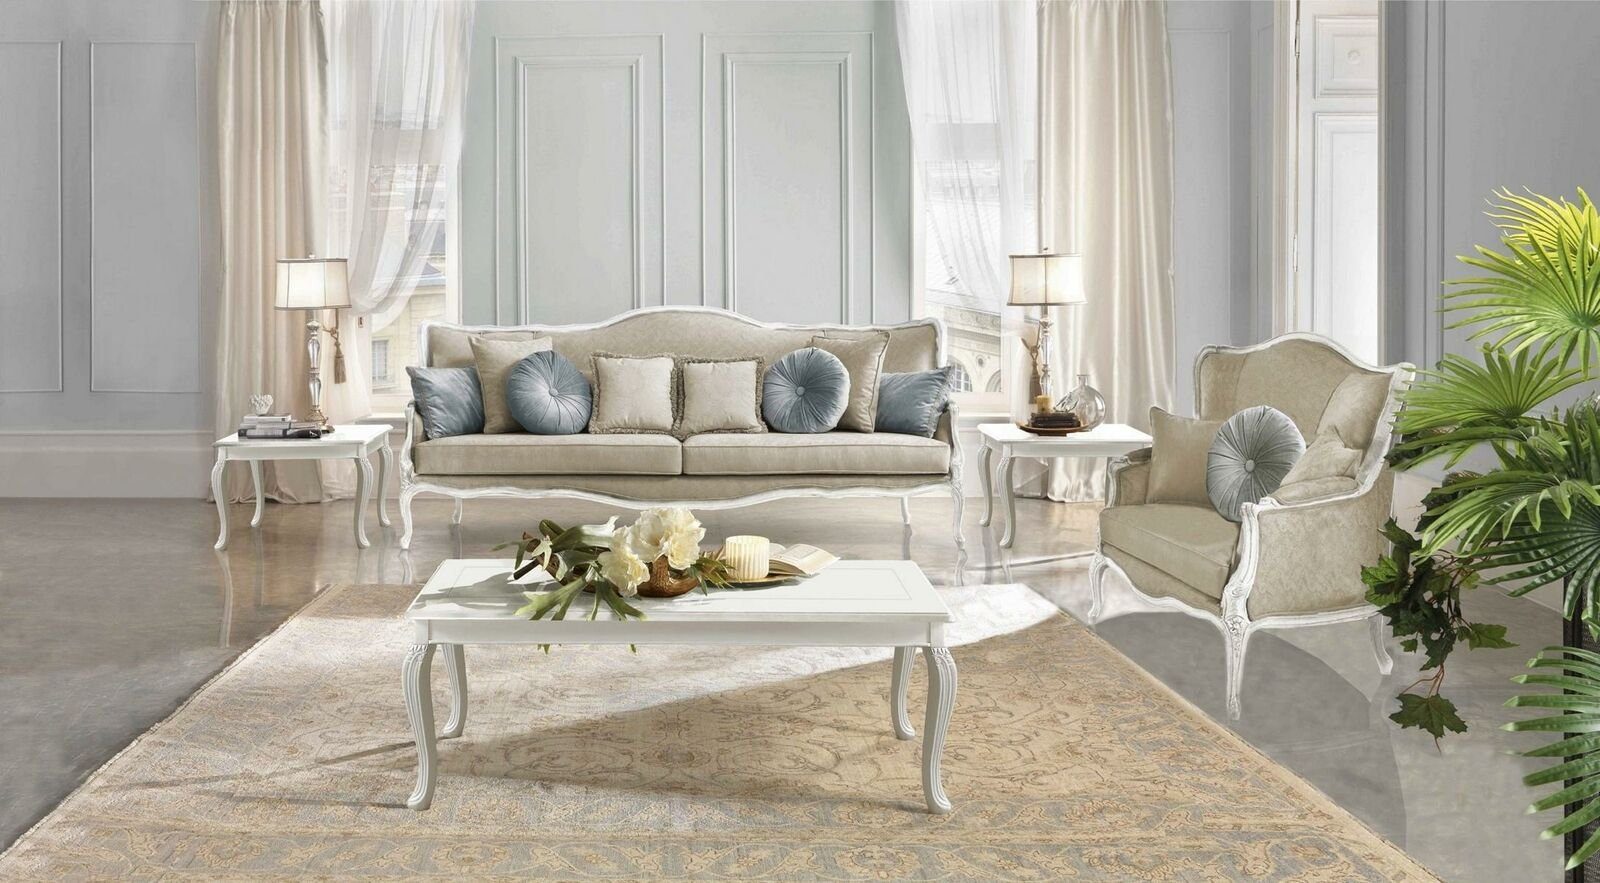 JVmoebel Sofa Italienische Möbel 3 Sitzer Klassische Barock Rokoko Sofa Textil Stoff, Made in Europe | Alle Sofas